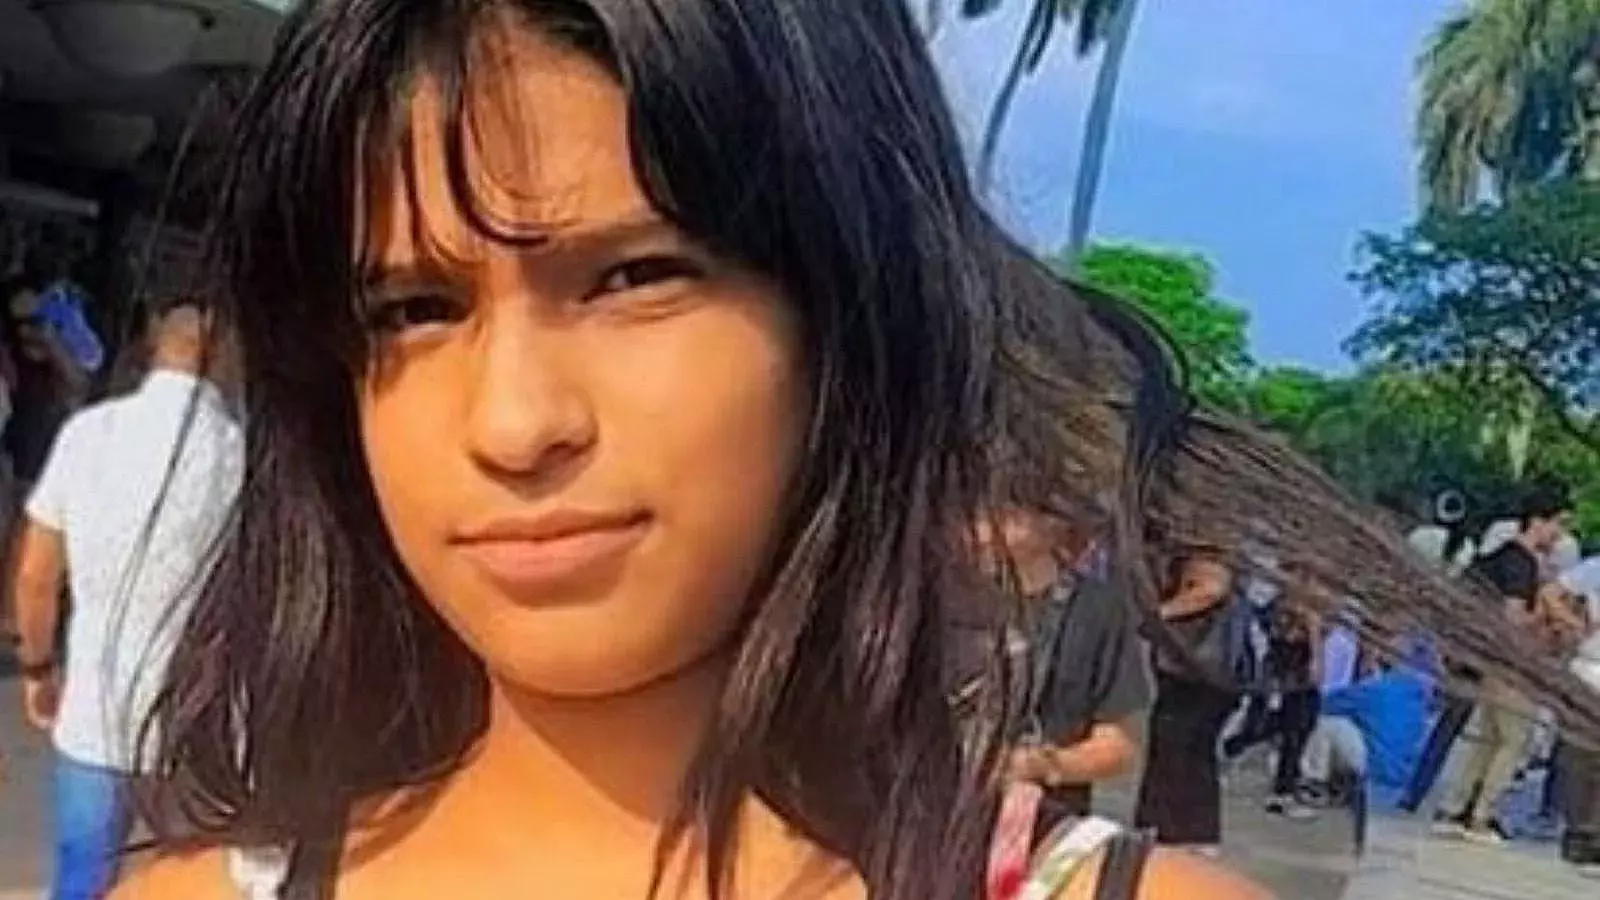 Alertan sobre desaparición de niña de 14 años en Cuba